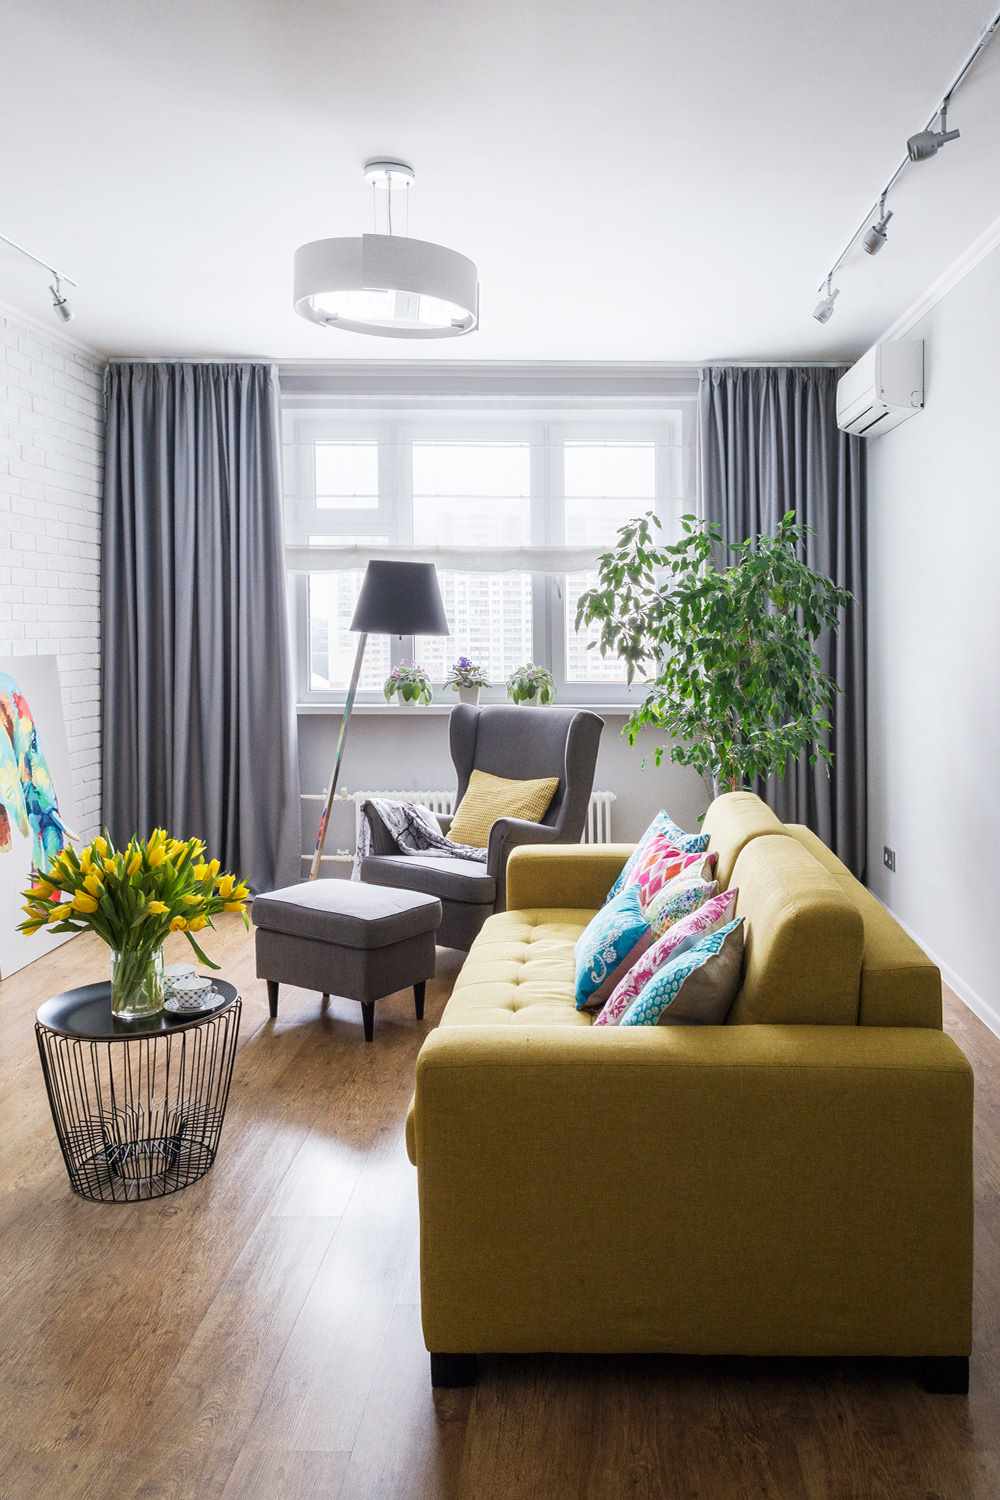 verzia svetlého interiéru obývacej izby 2018